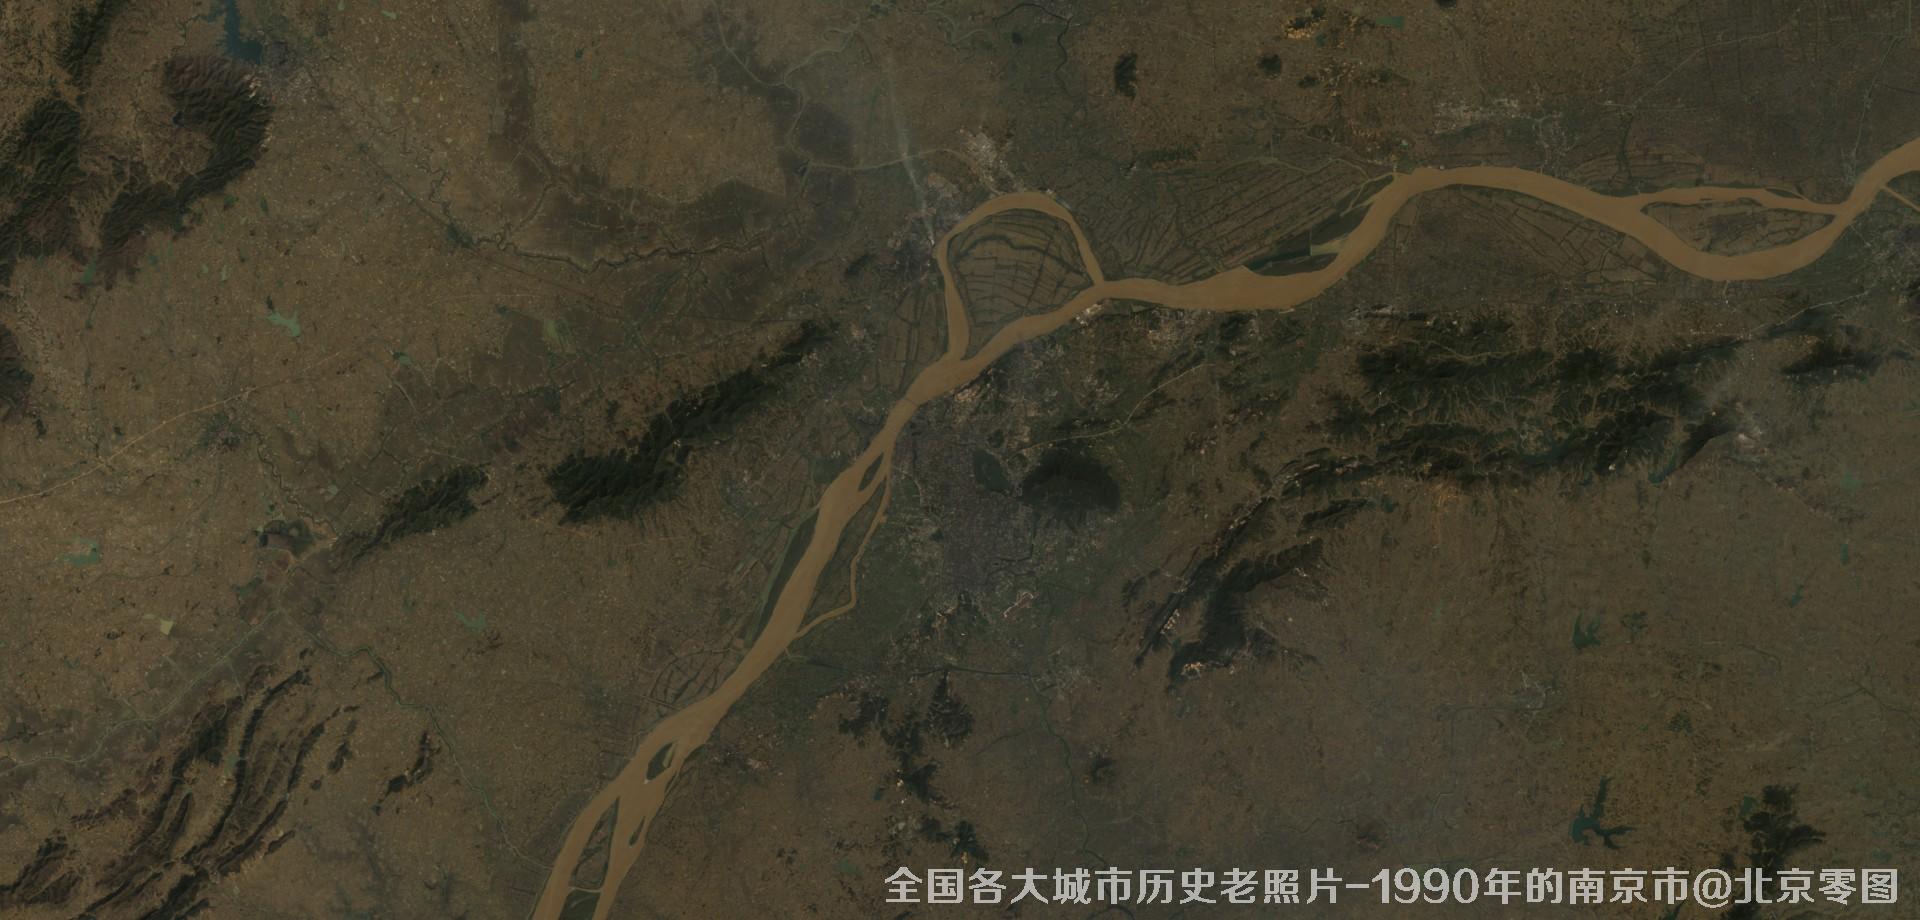 美国Landsat卫星拍摄的1990年的江苏省京市历史卫星影像图